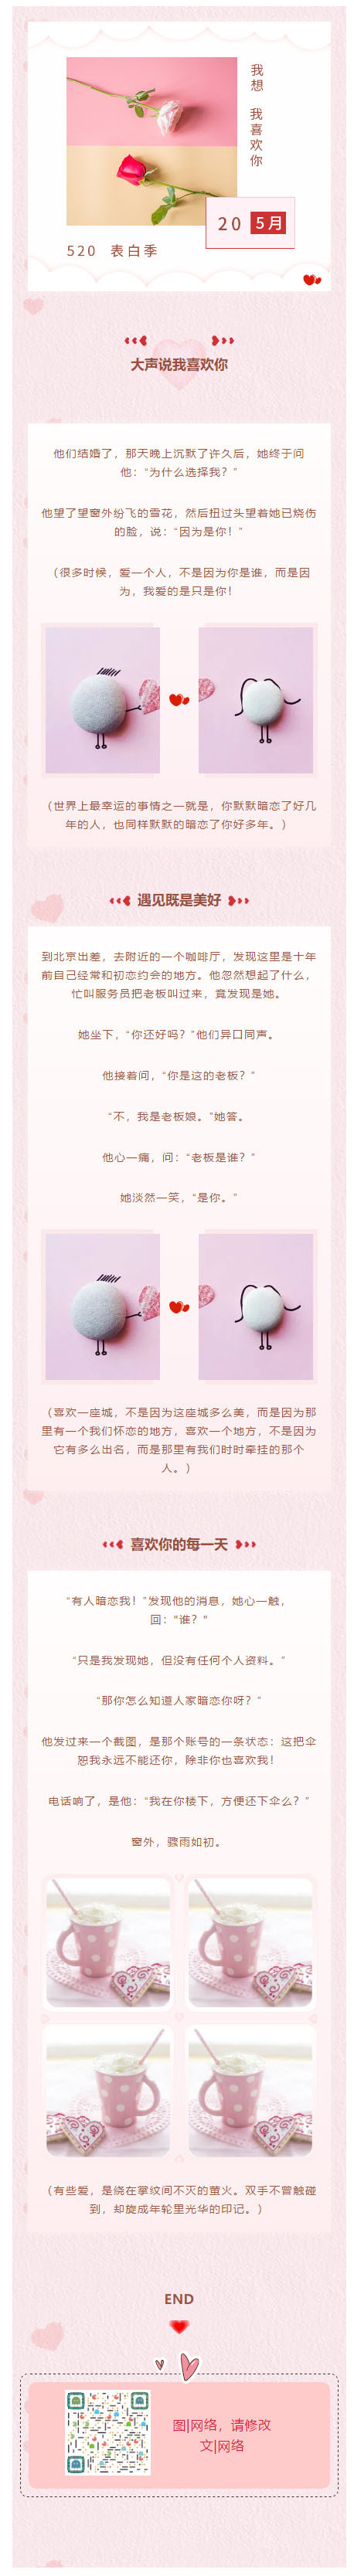 520情人节快乐520浪漫表白粉红色背景图微信模板公众号素材